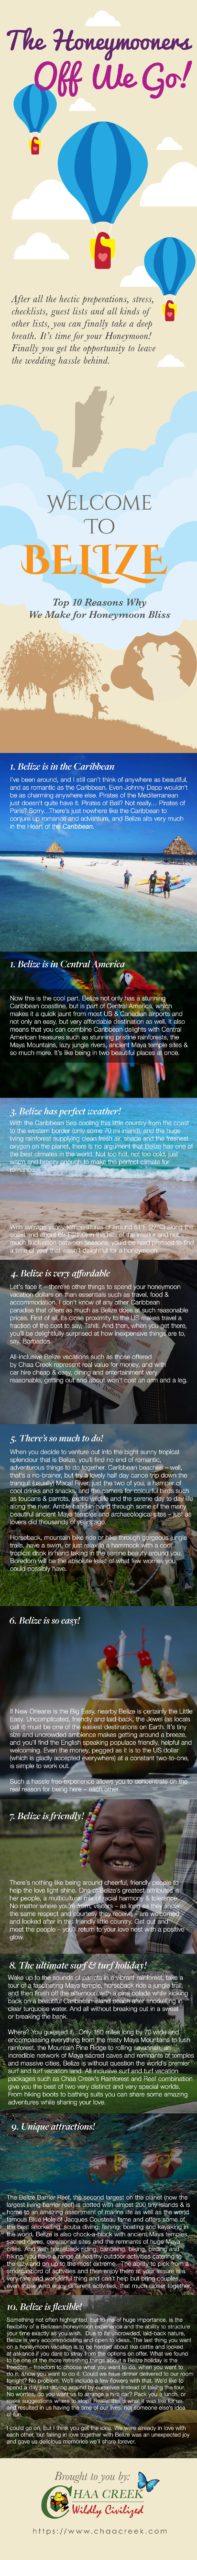 Belize Honeymoon: Top 10 Reasons Infographic